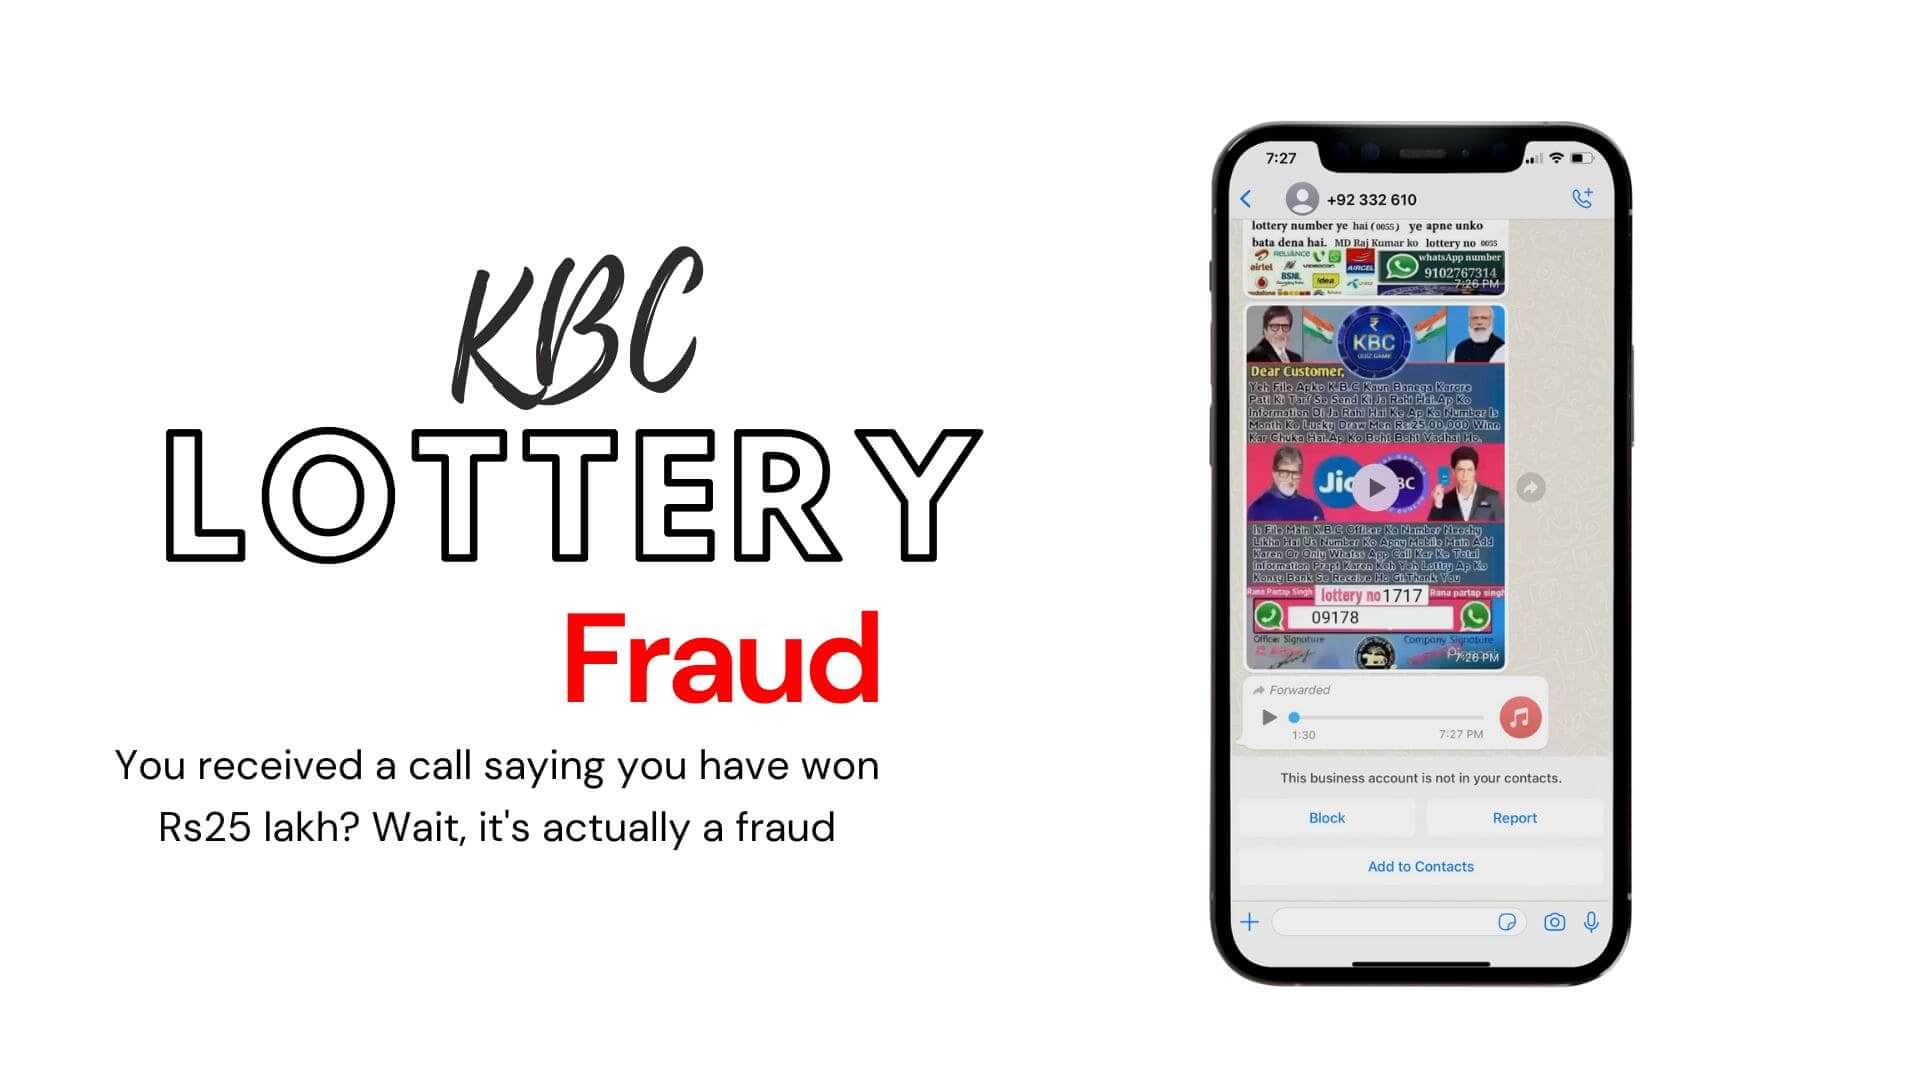 KBC Lottery Fraud